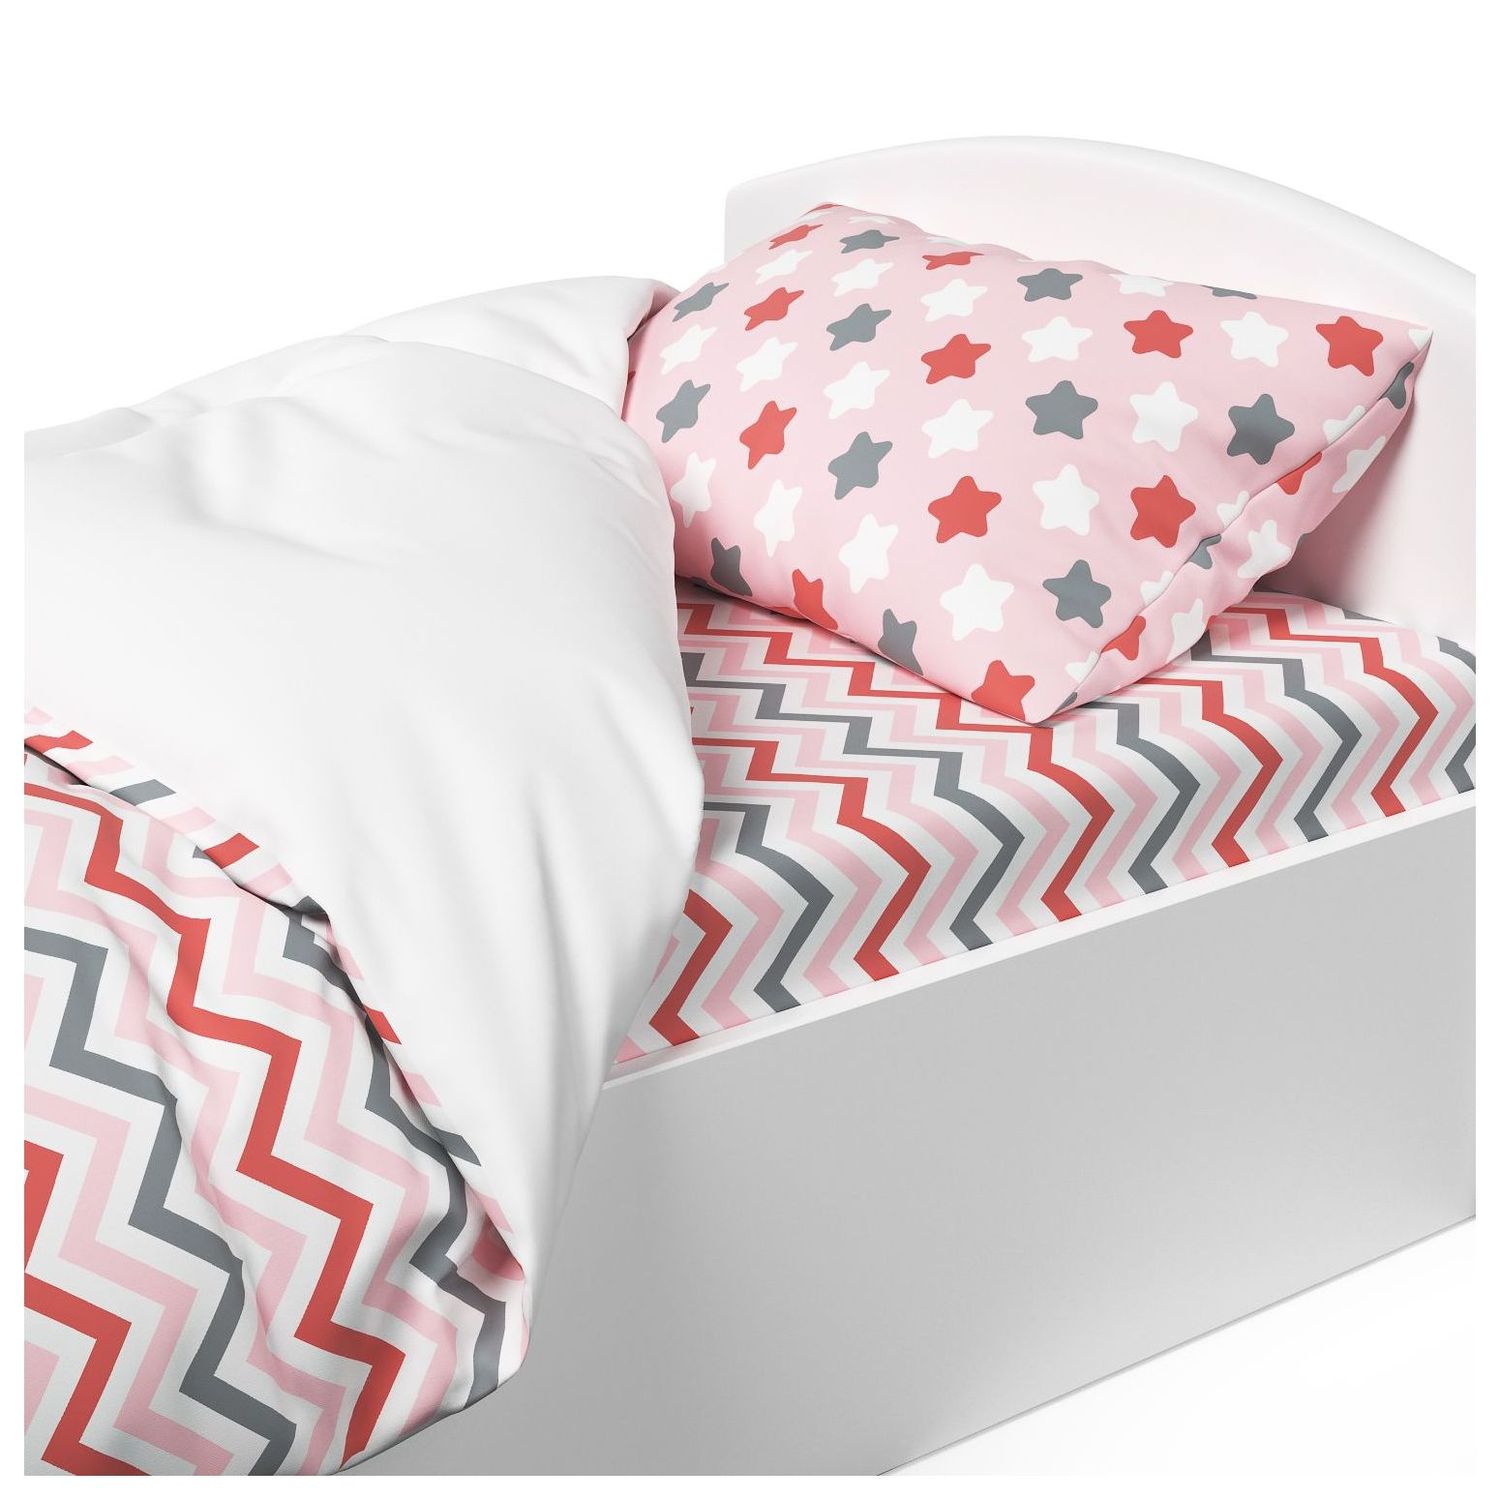 Комплект постельного белья Капризун Розовый мир 1.5спальный 3предмета - фото 6